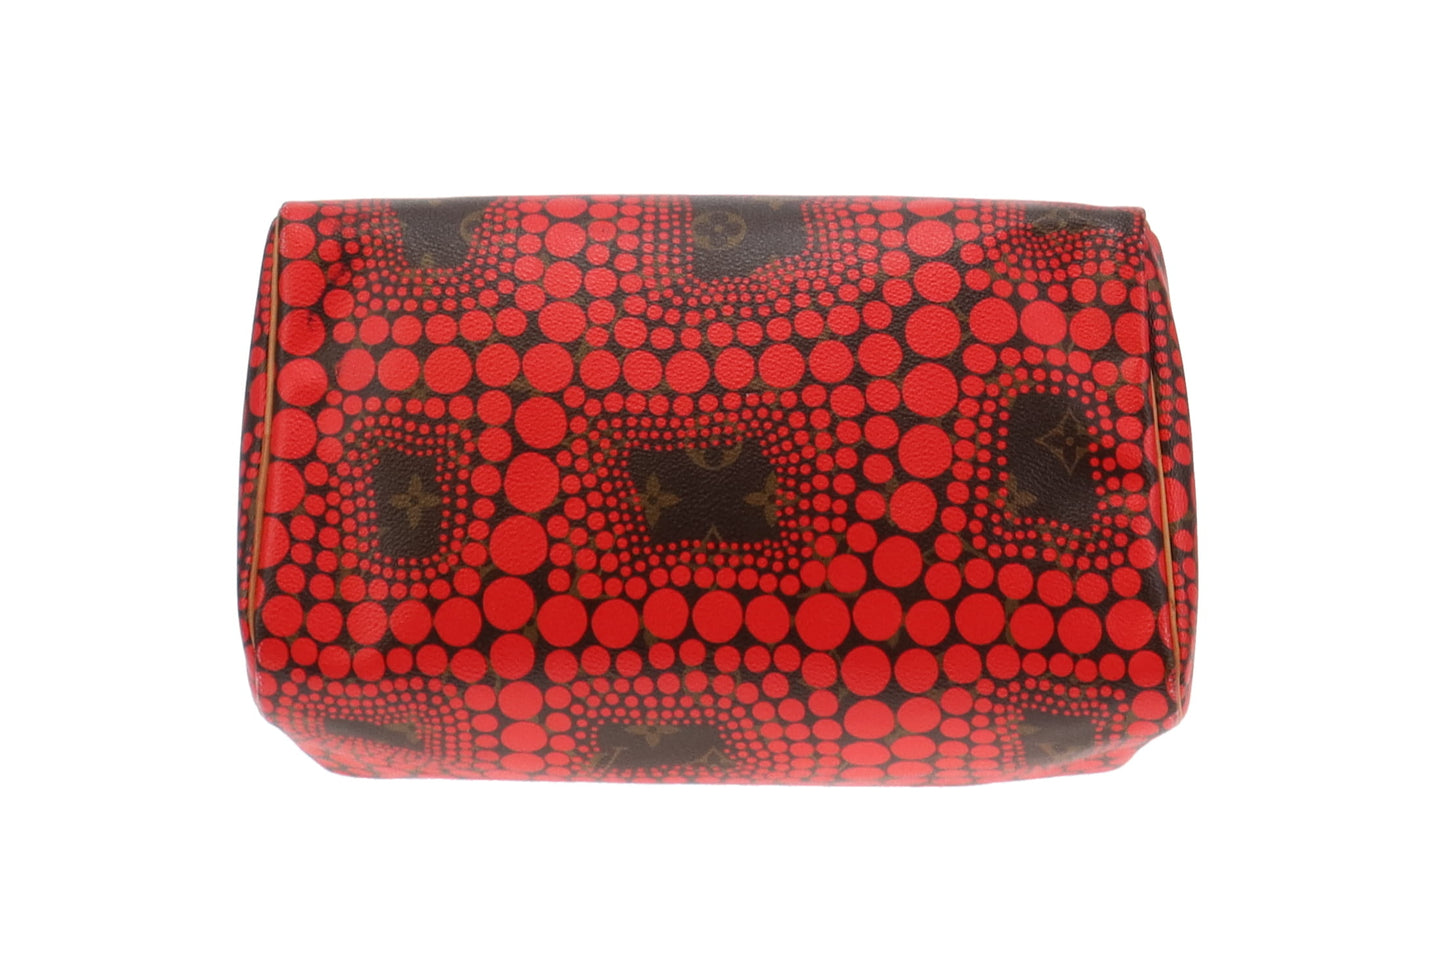 Louis Vuitton x Yayoi Kusama Red Infinity Dots 2012 Speedy 30